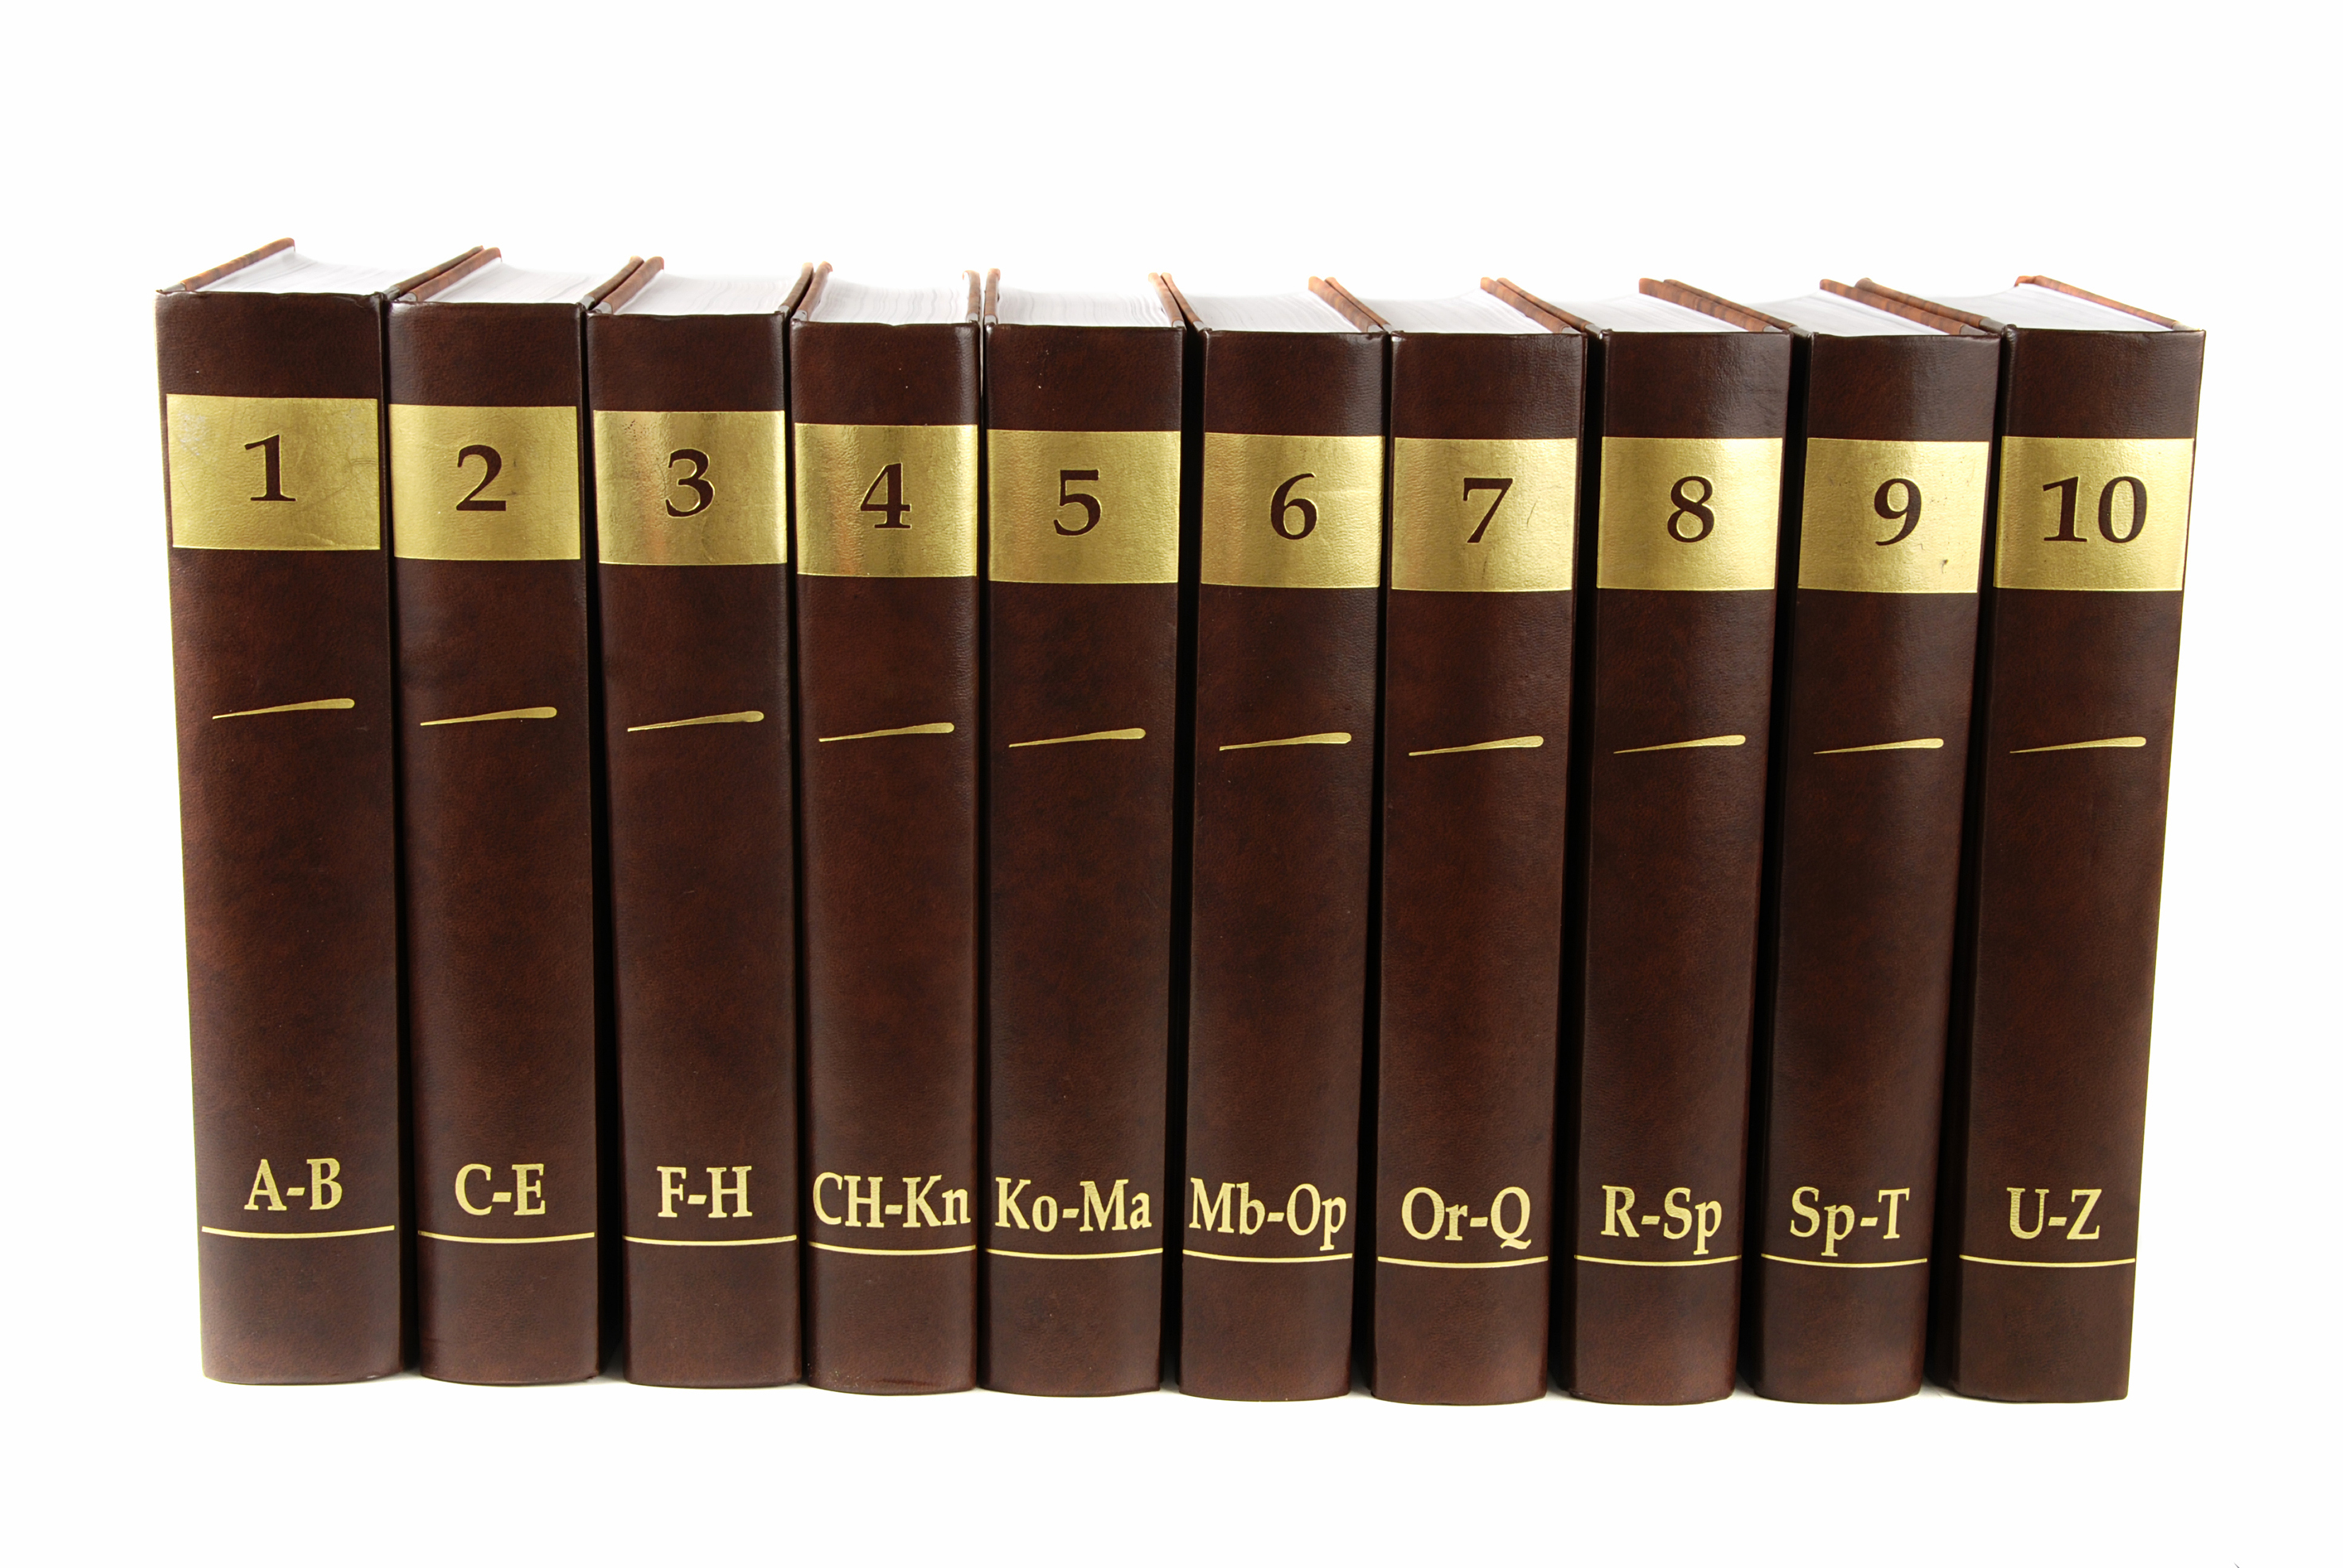 A set of encyclopedias